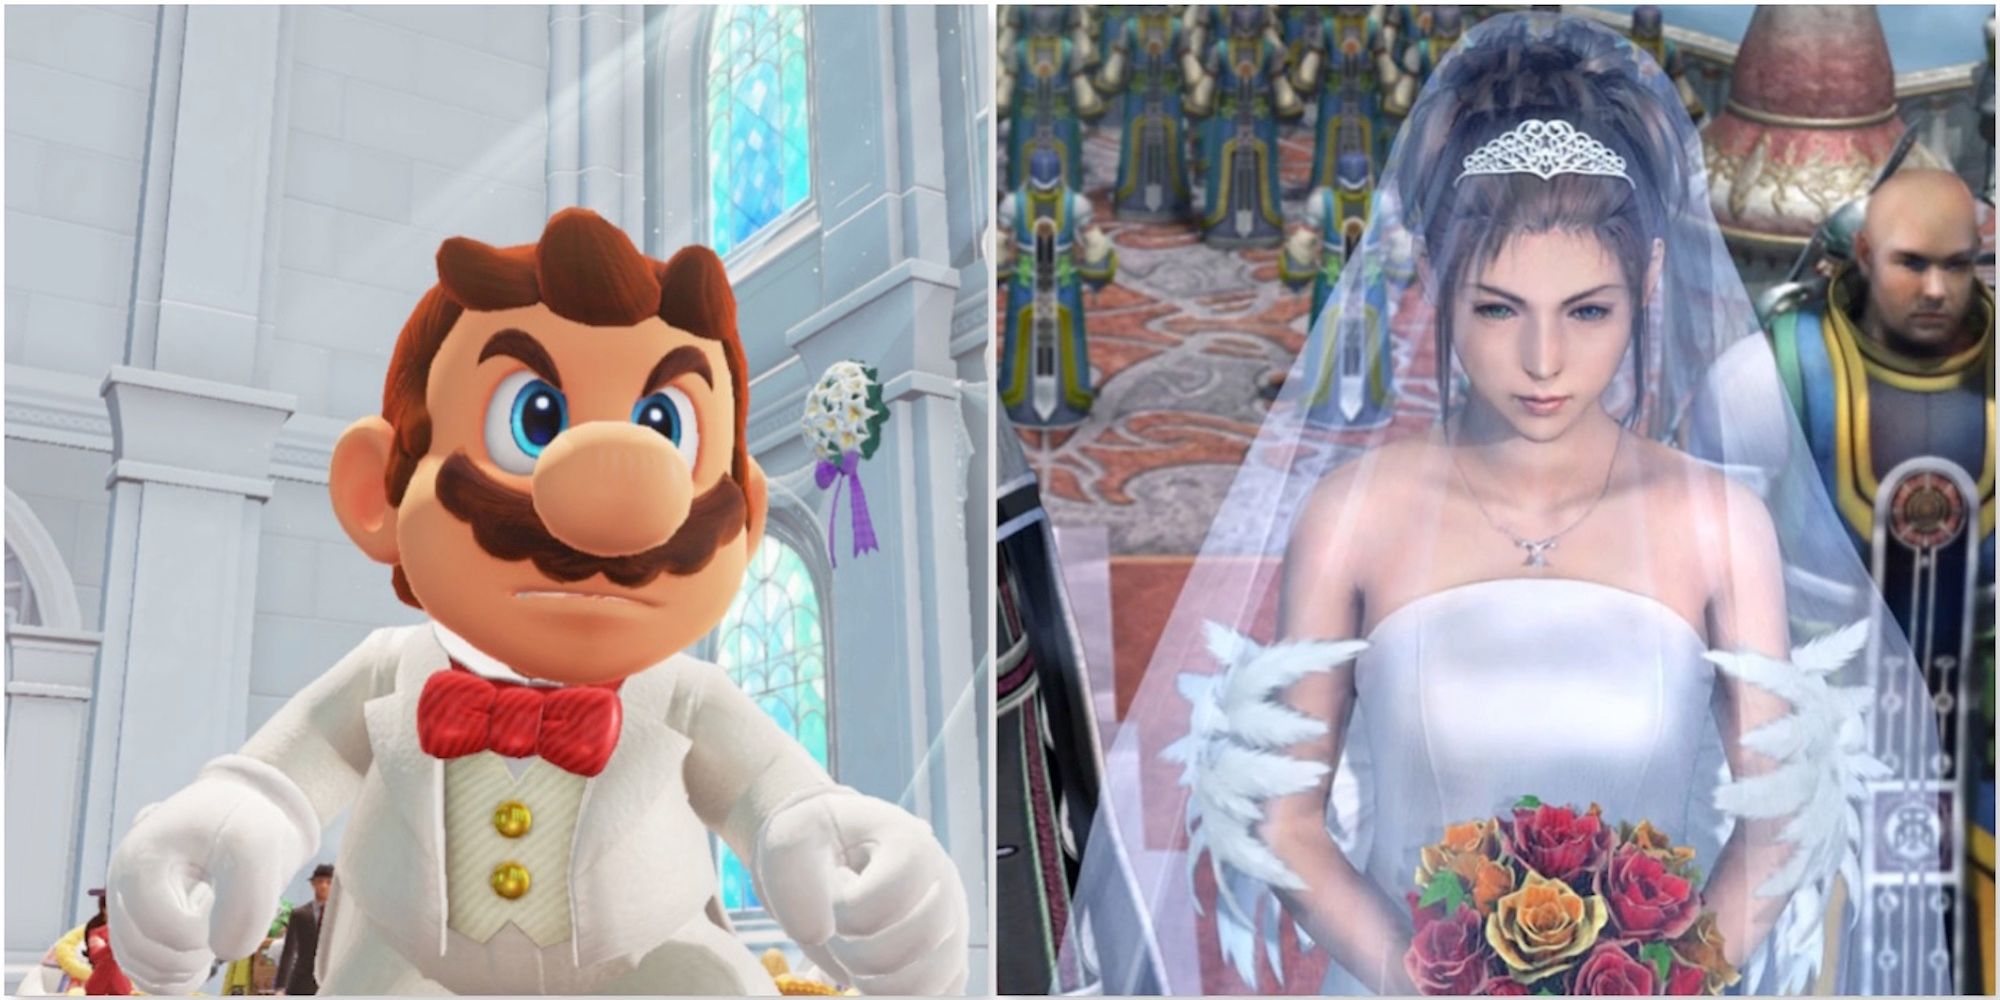 Mario in Super Mario Odyssey and Yuna in Final Fantasy 10